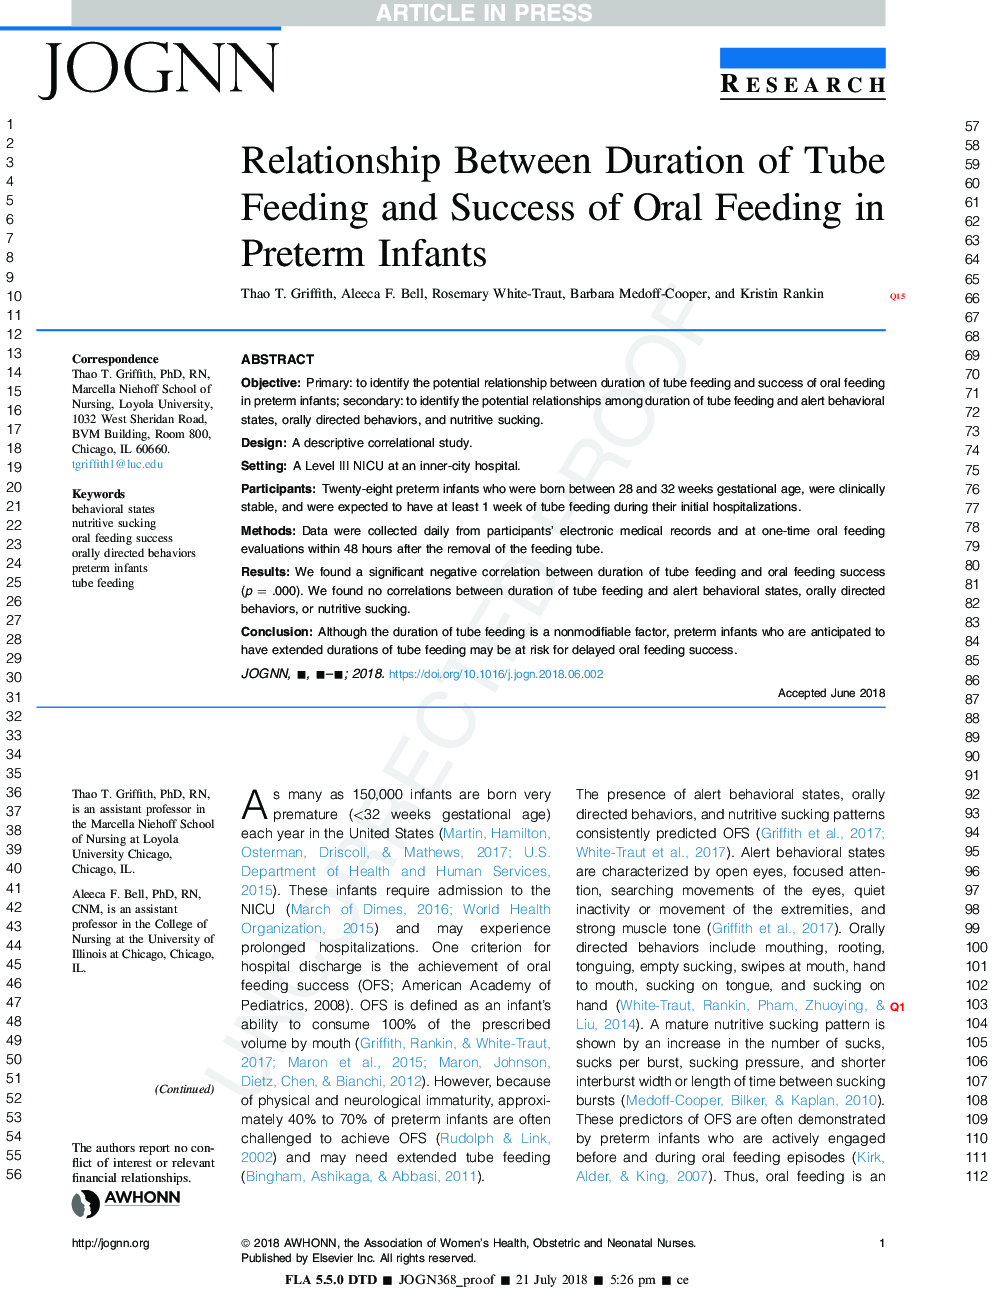 رابطه بین طول مدت تغذیه لوله و موفقیت تغذیه دهانی در نوزادان نارس